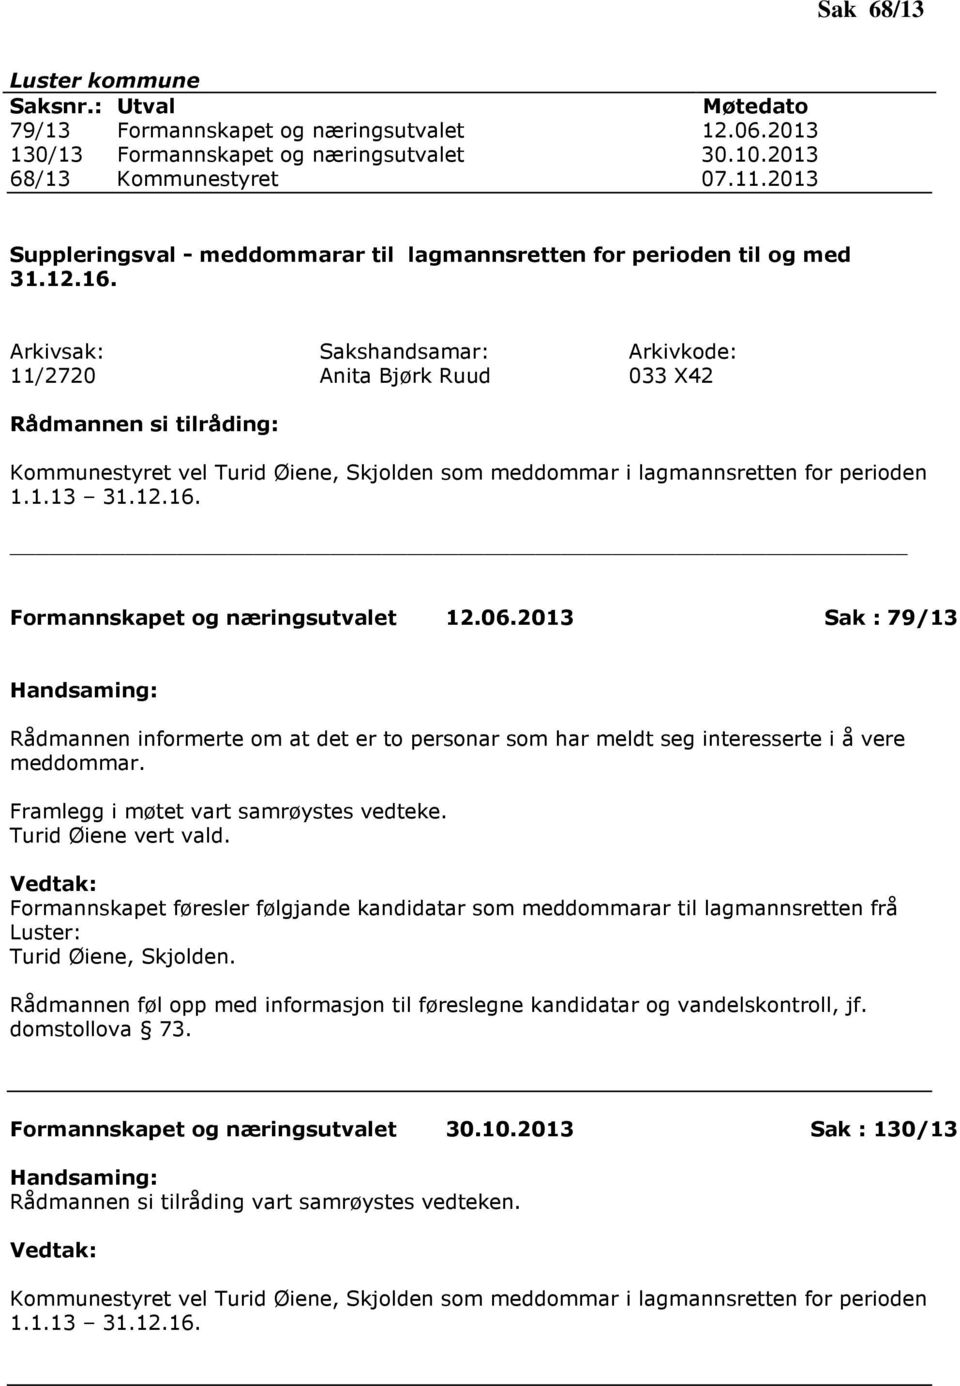 11/2720 Anita Bjørk Ruud 033 X42 Kommunestyret vel Turid Øiene, Skjolden som meddommar i lagmannsretten for perioden 1.1.13 31.12.16. Formannskapet og næringsutvalet 12.06.